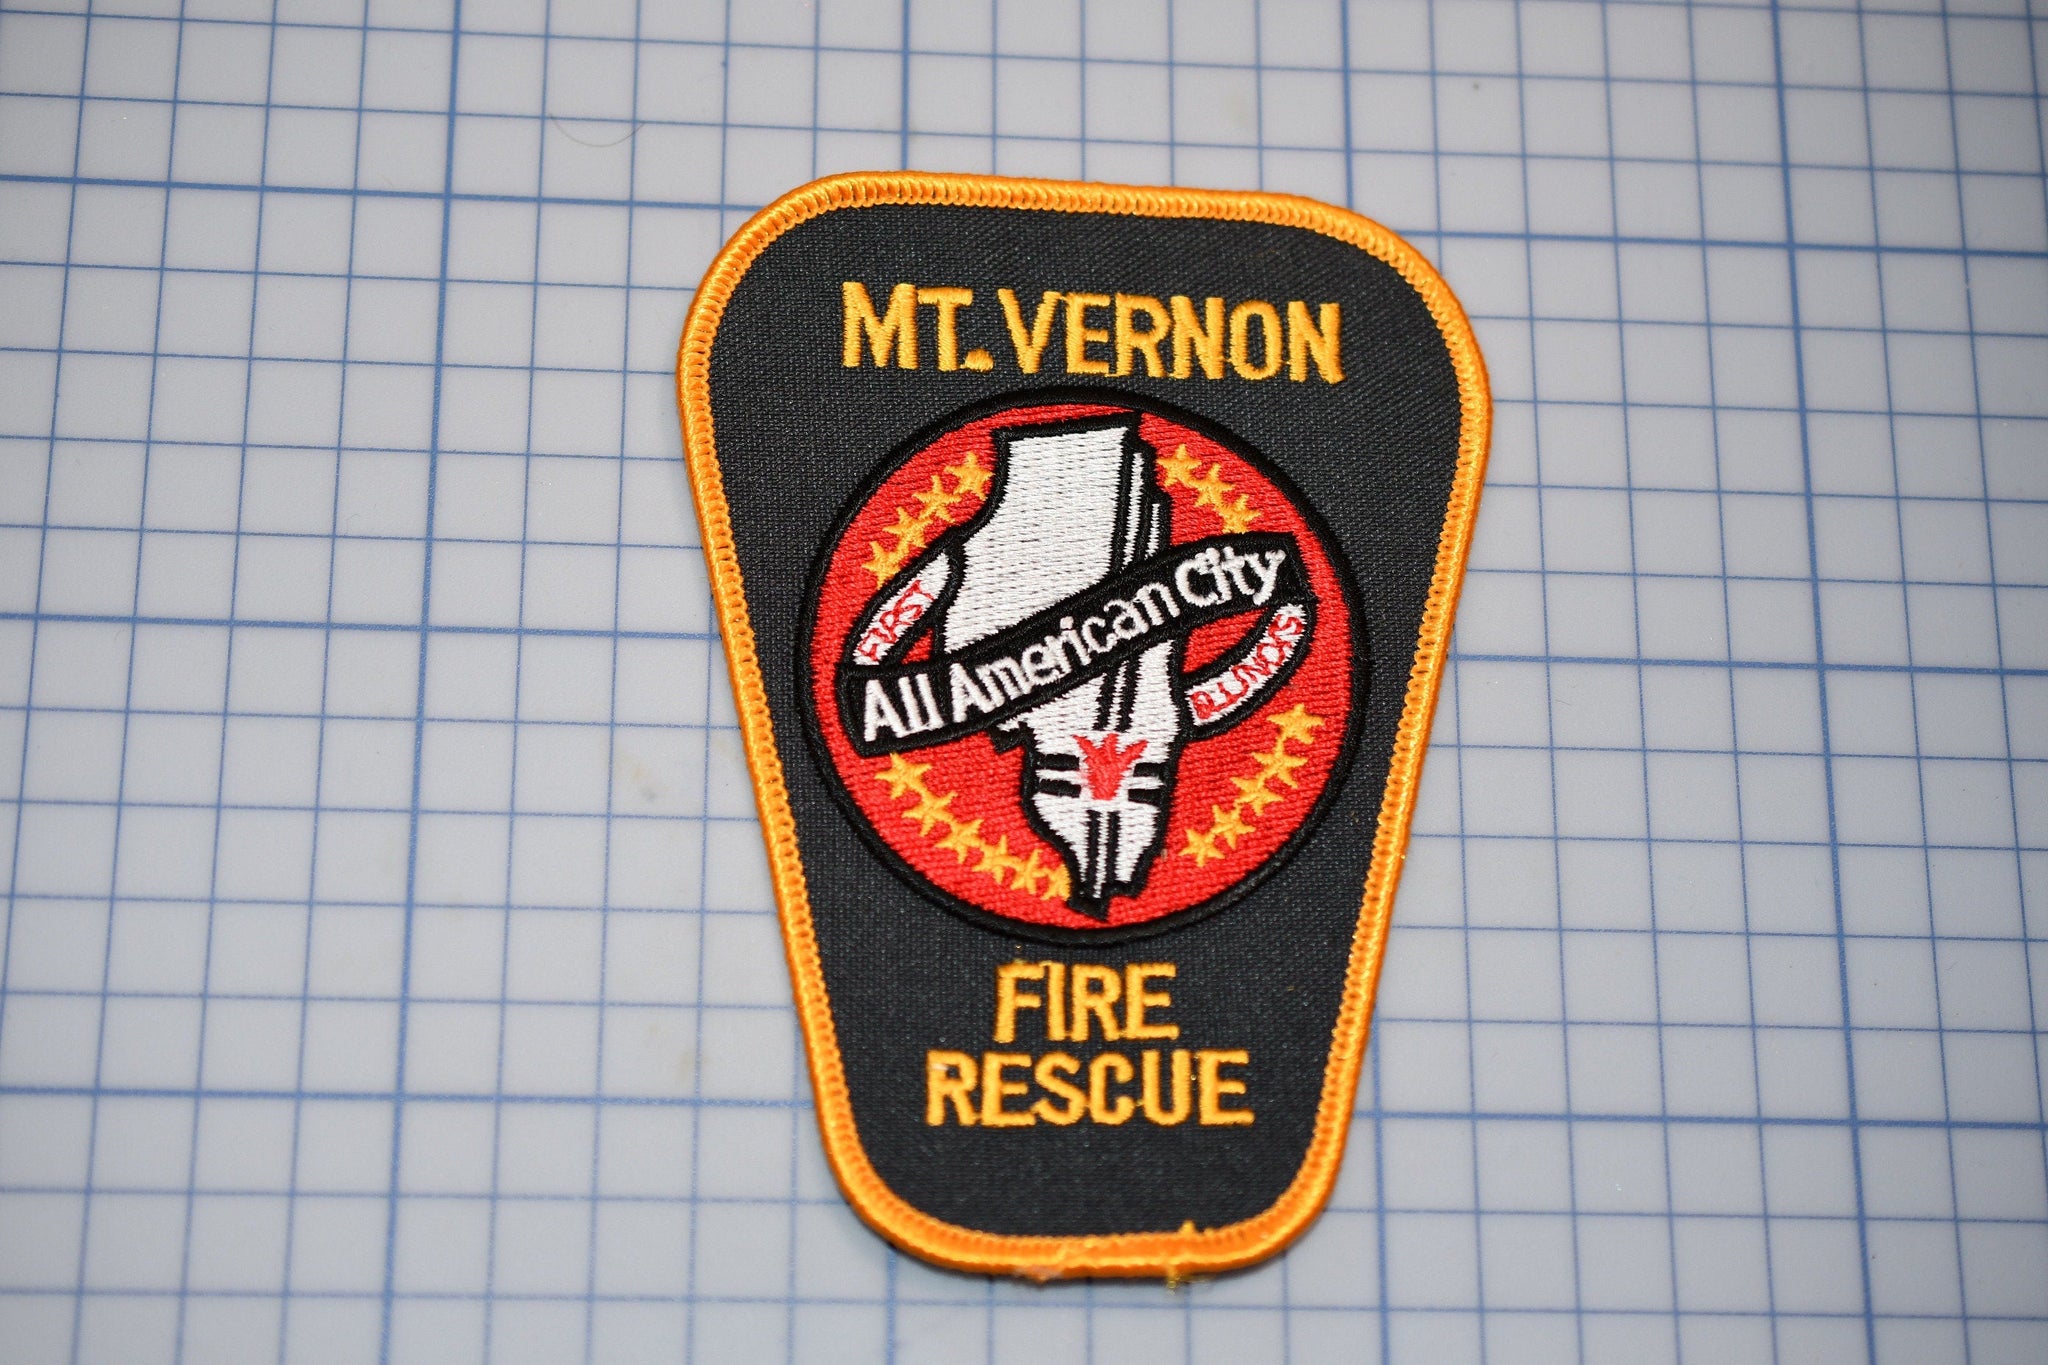 Mt. Vernon Illinois Fire Rescue Patch (B25-335)